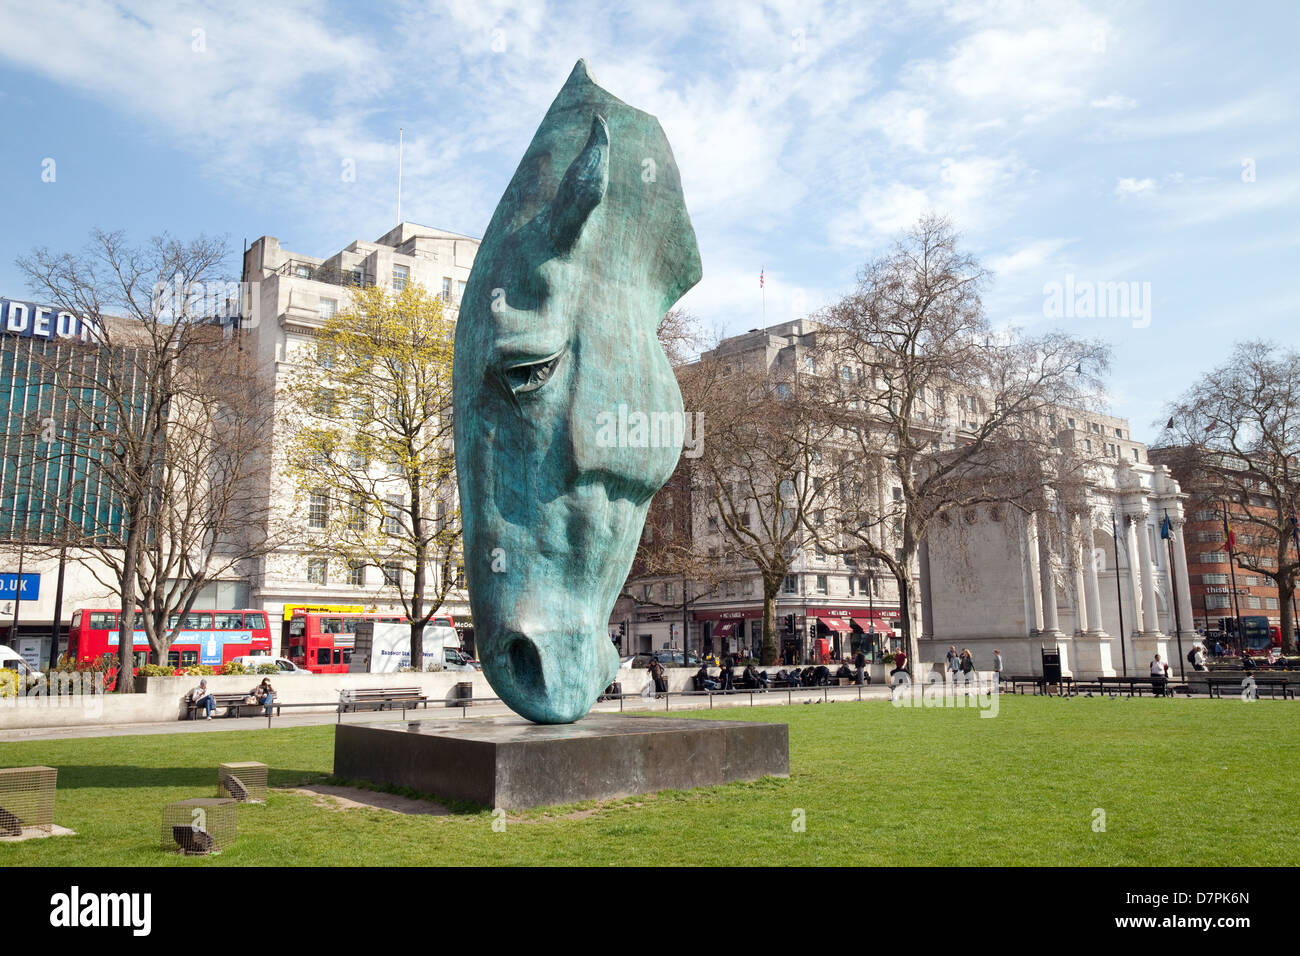 Pferdenkopf Skulptur von Nic Fiddian-Green, genannt "Stilles Wasser" am Marble Arch, central London UK Stockfoto